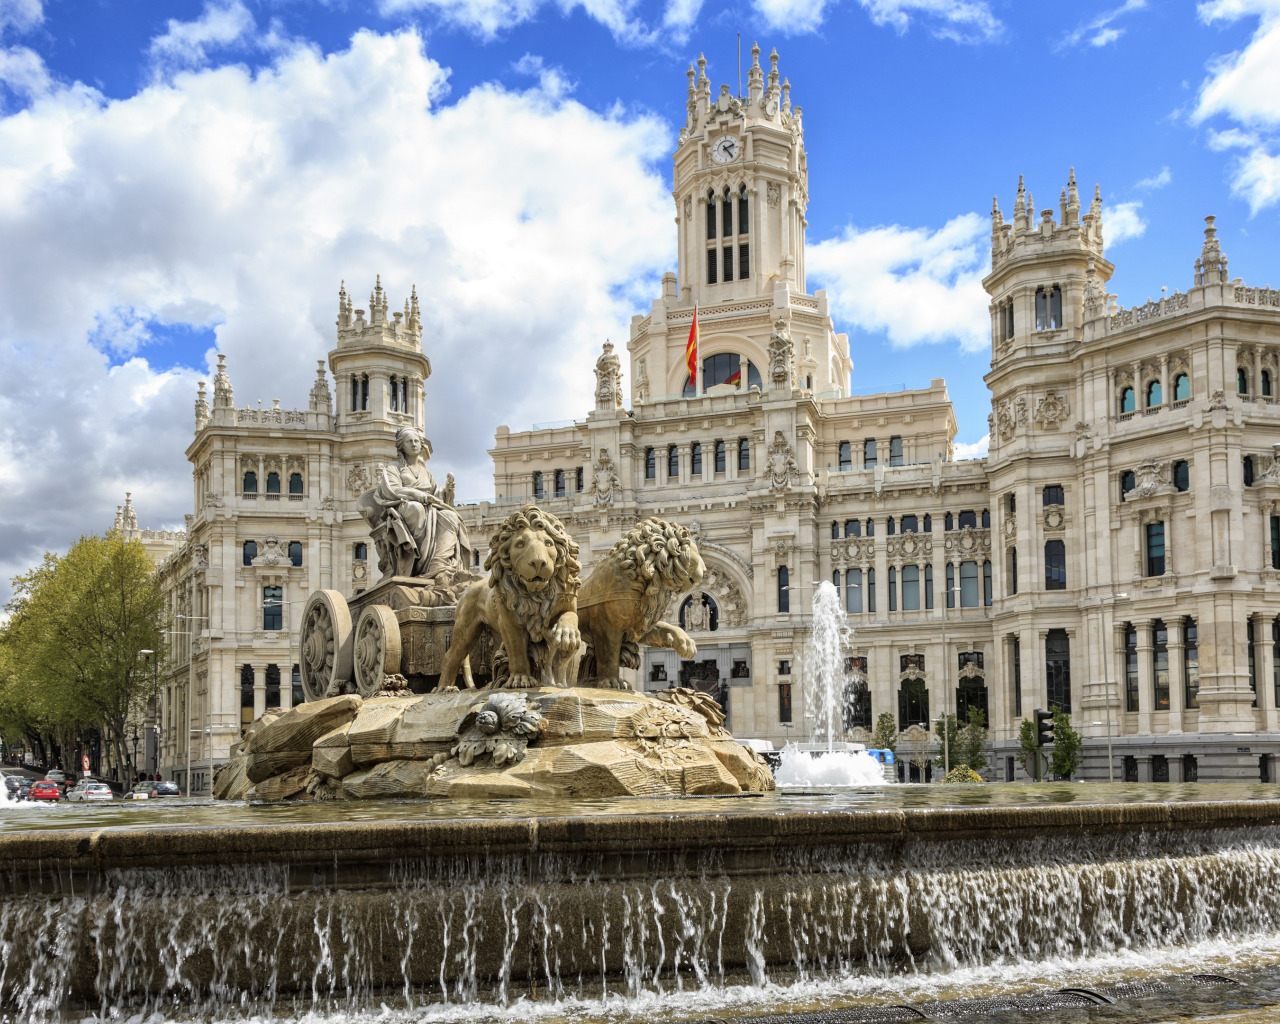 Плаза де Сибелес Мадрид. Дворец и фонтан Сибелес Мадрид. Площадь Сибелес 14 Мадрид. Мадрида Испания фантан. Испания города для жизни